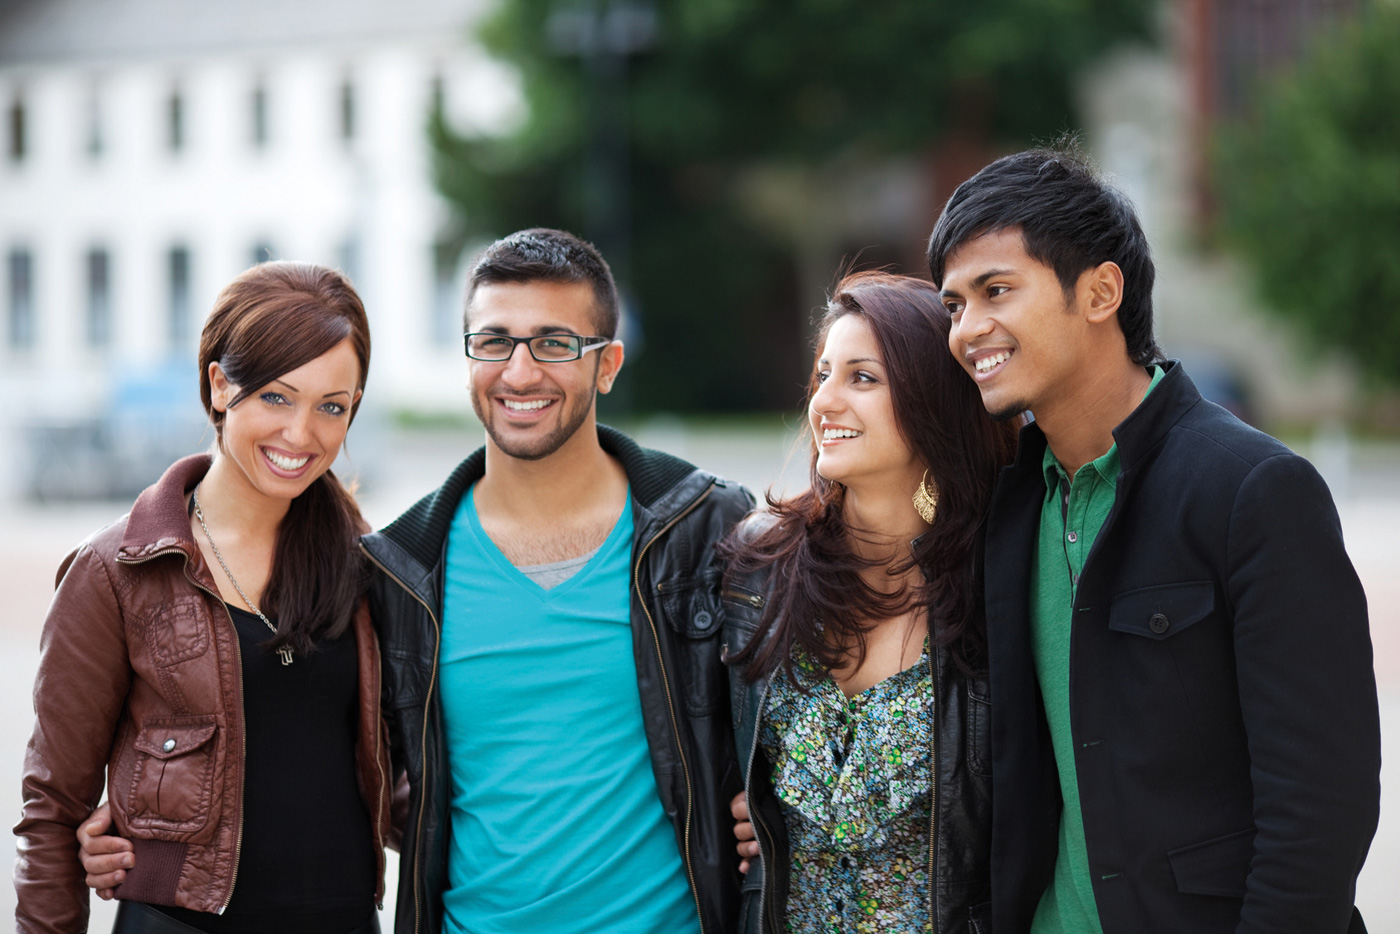 Zwei junge Frauen und zwei junge Männer mit ausländischer Herkunft stehen in einer Gruppe und lächeln